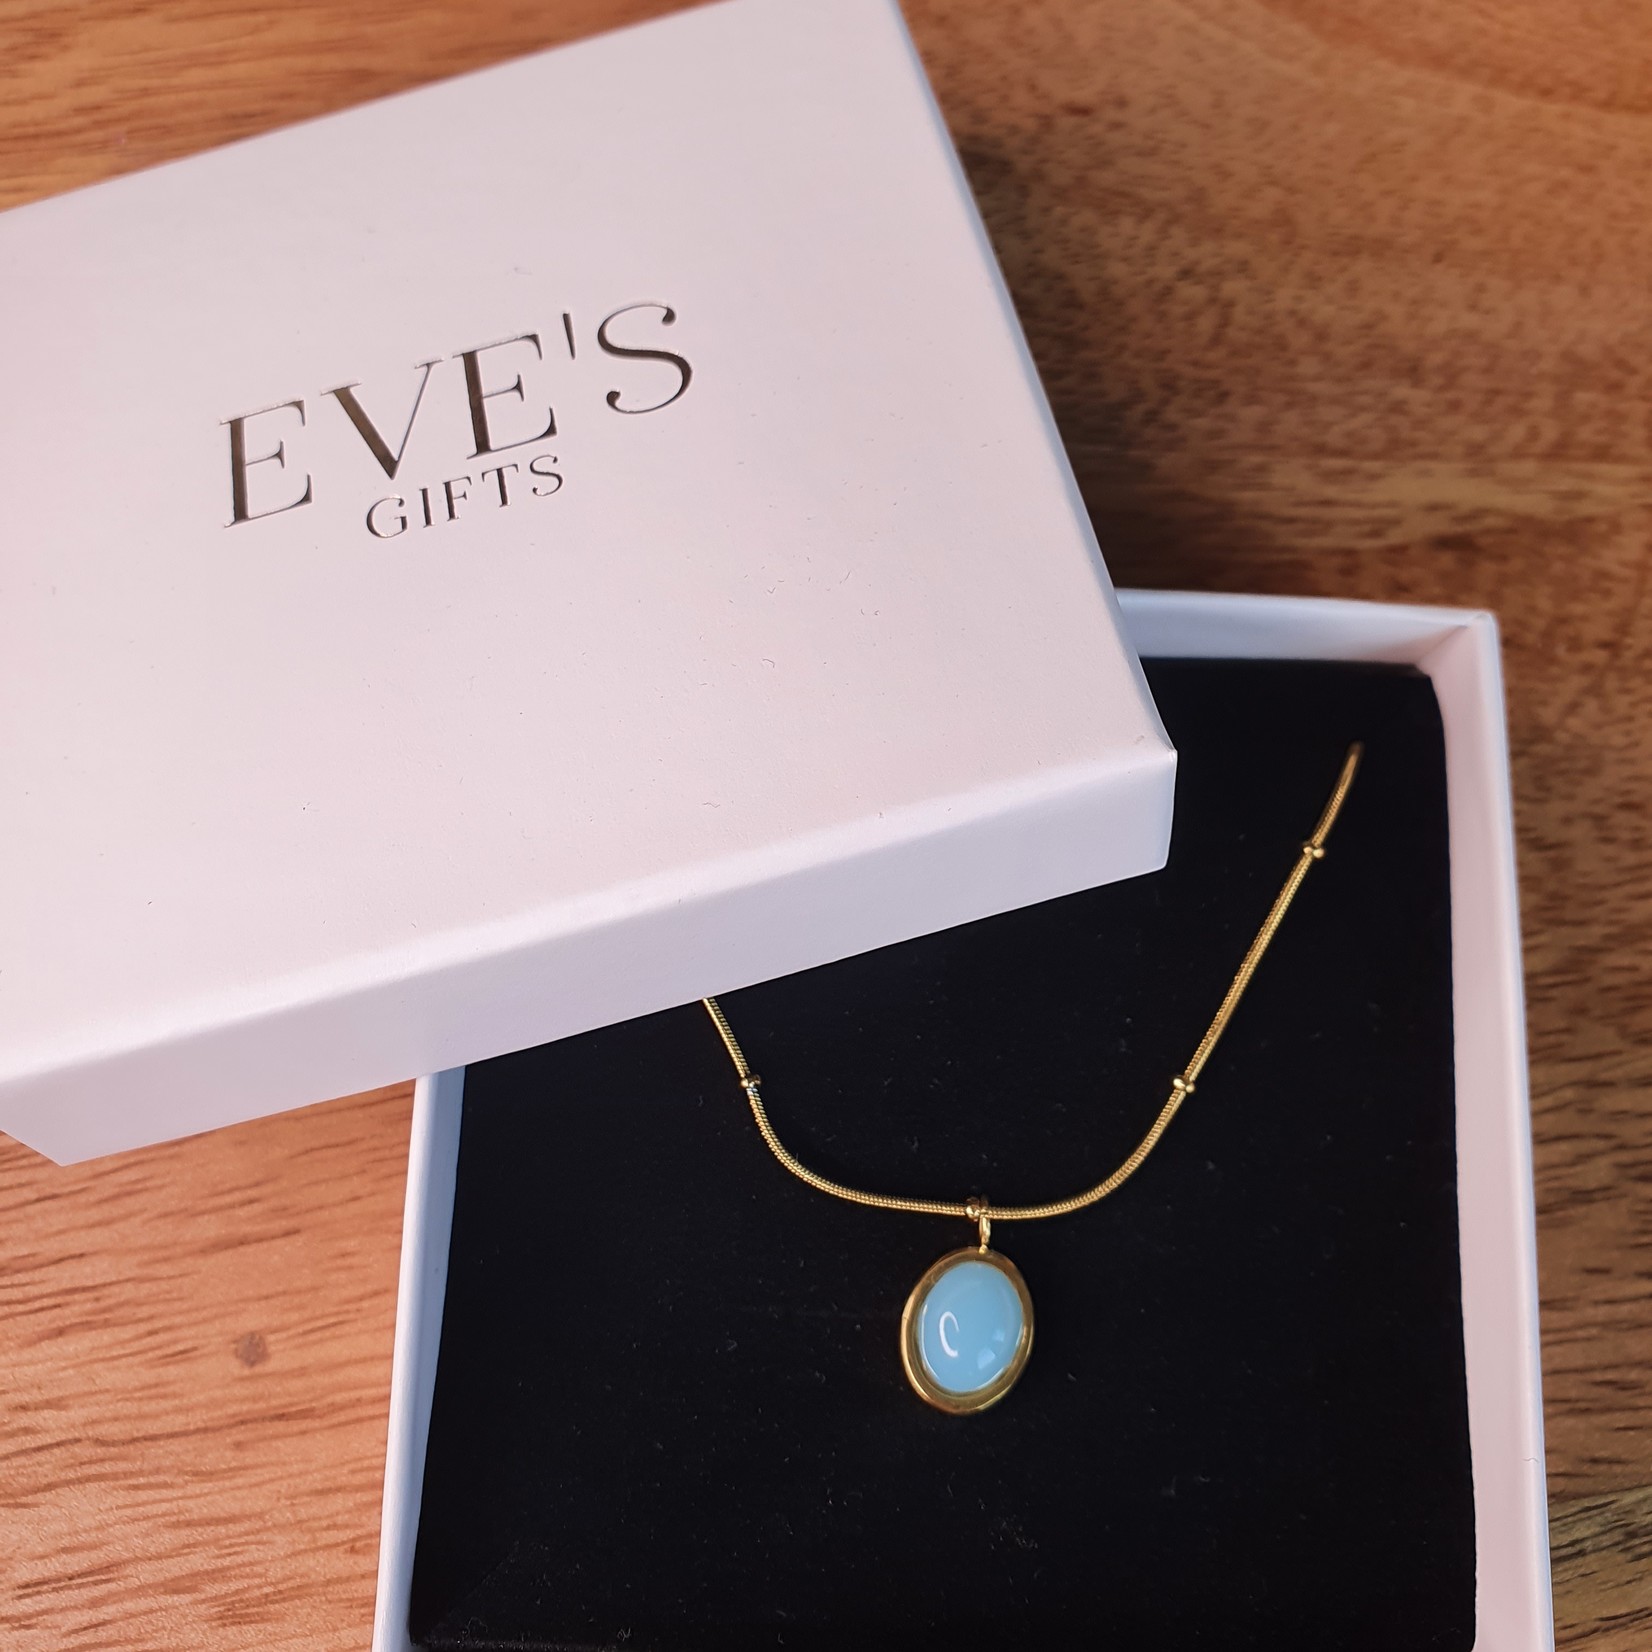 Eve's Gifts 14 Karat vergoldete Halskette mit hellblauem ovalem Stein